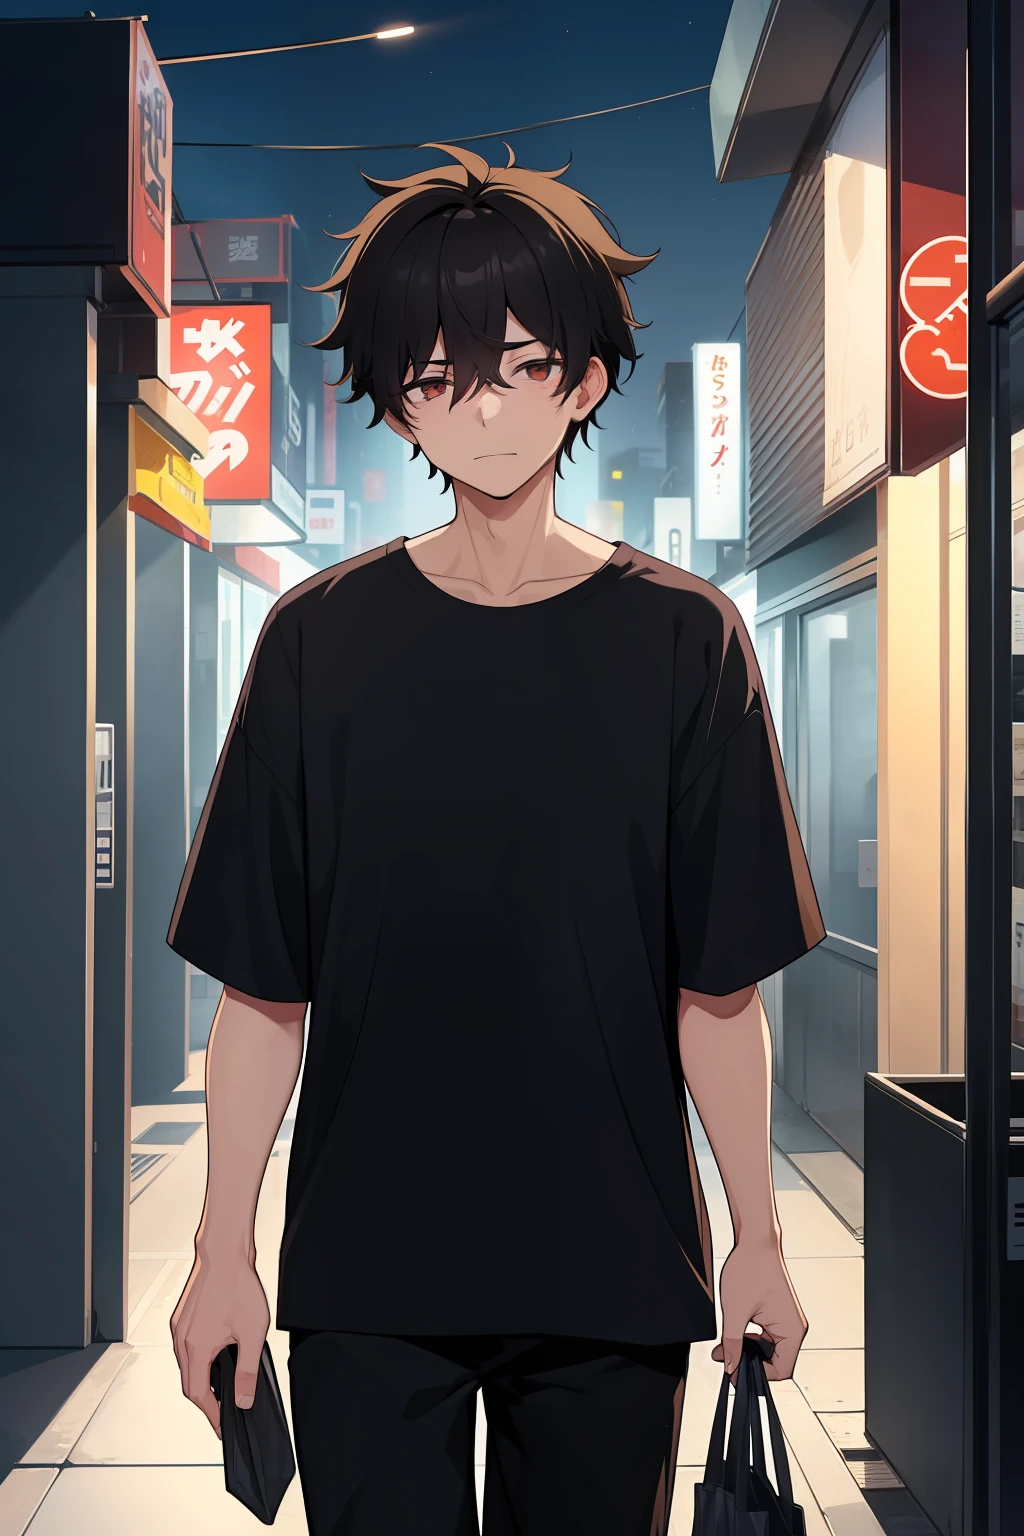 남성 1명, 20세, 과로하다, 지저분한 검은 머리, 검은 셔츠, 편의점 가방을 들고, 밤에 한적한 도시 지역을 산책하다